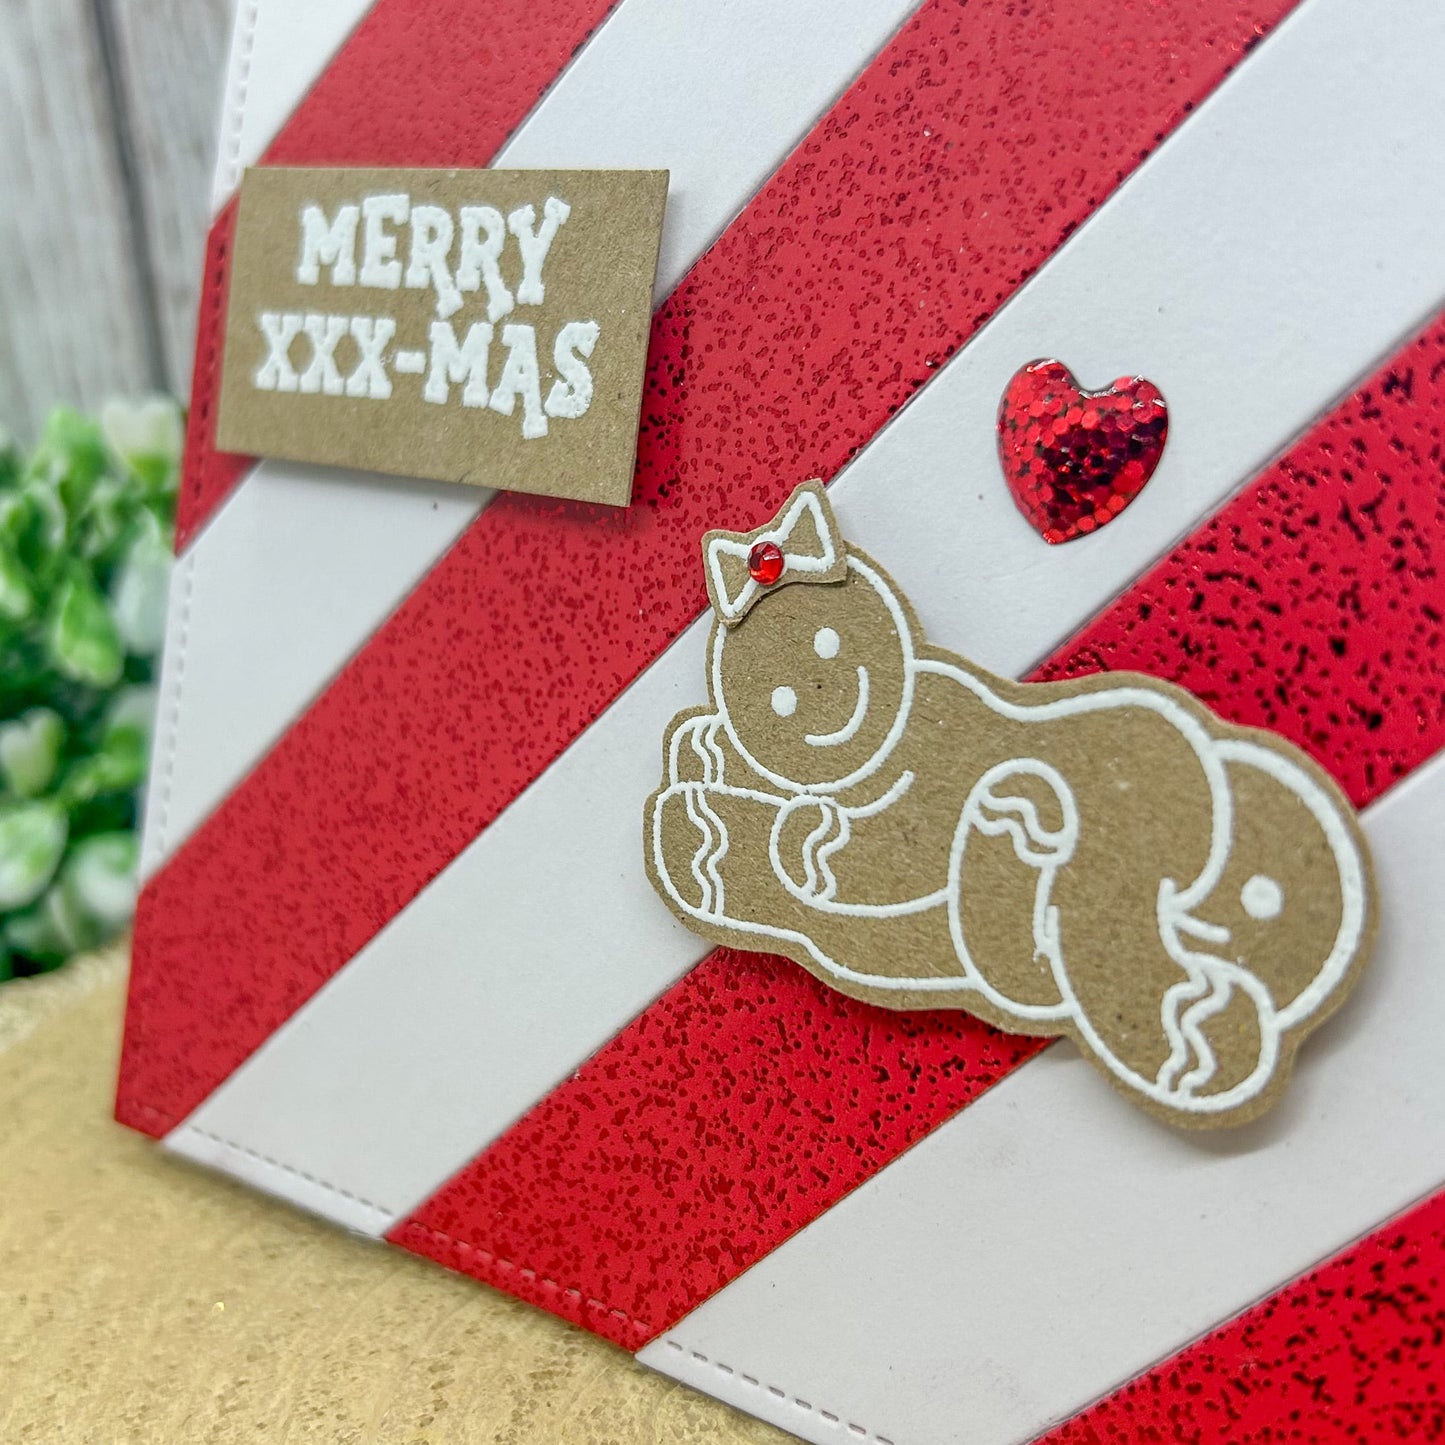 Merry XXX-mas Gingerbread 69 Couple Rude Handmade Christmas Card-2